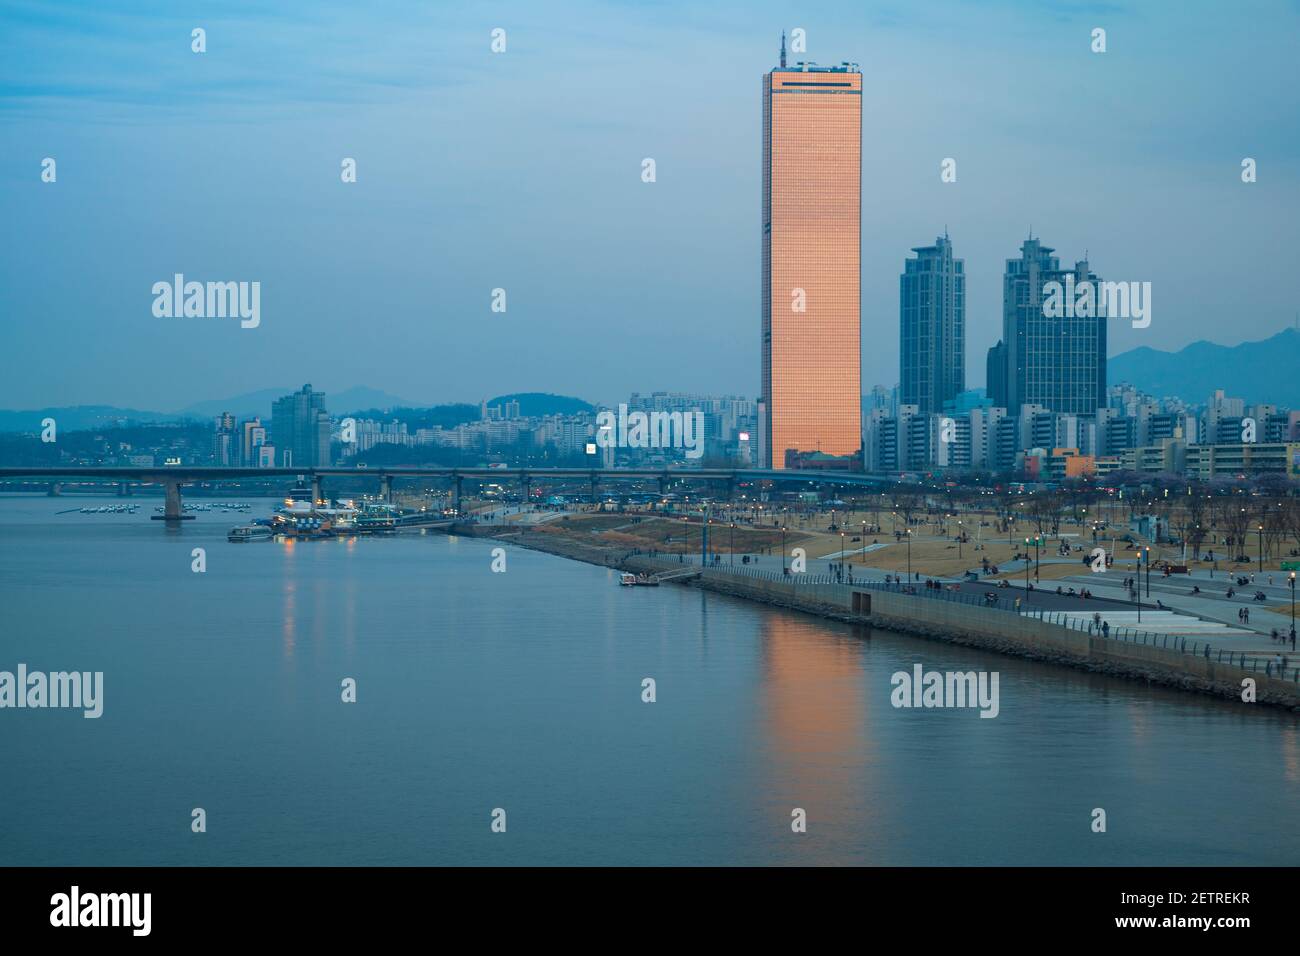 Korea, Seoul, Yeouido, 63 Gebäude - eines der berühmtesten Wahrzeichen von Seouls, das sich in der Dämmerung im Hangang-Fluss widerspiegelt Stockfoto